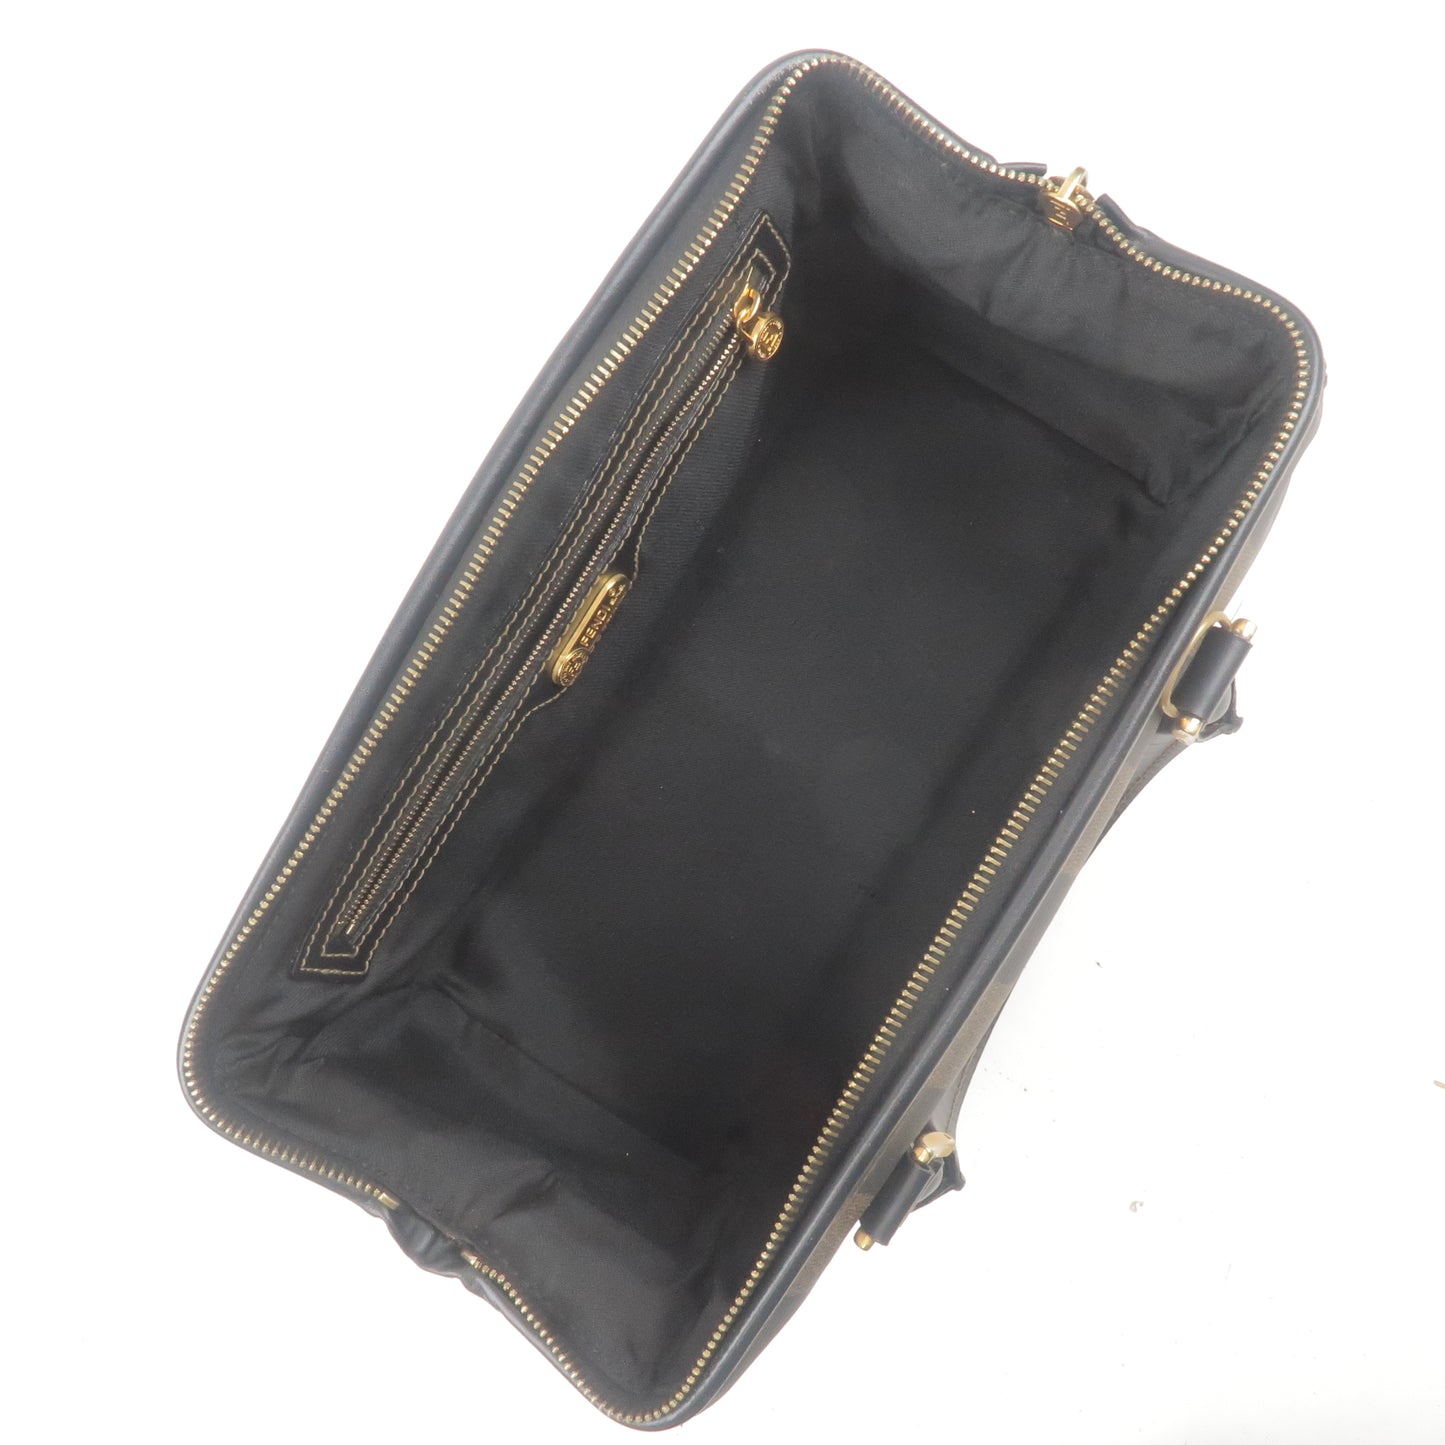 FENDI Pequin PVC Leather Boston Bag Hand Bag Khaki Black